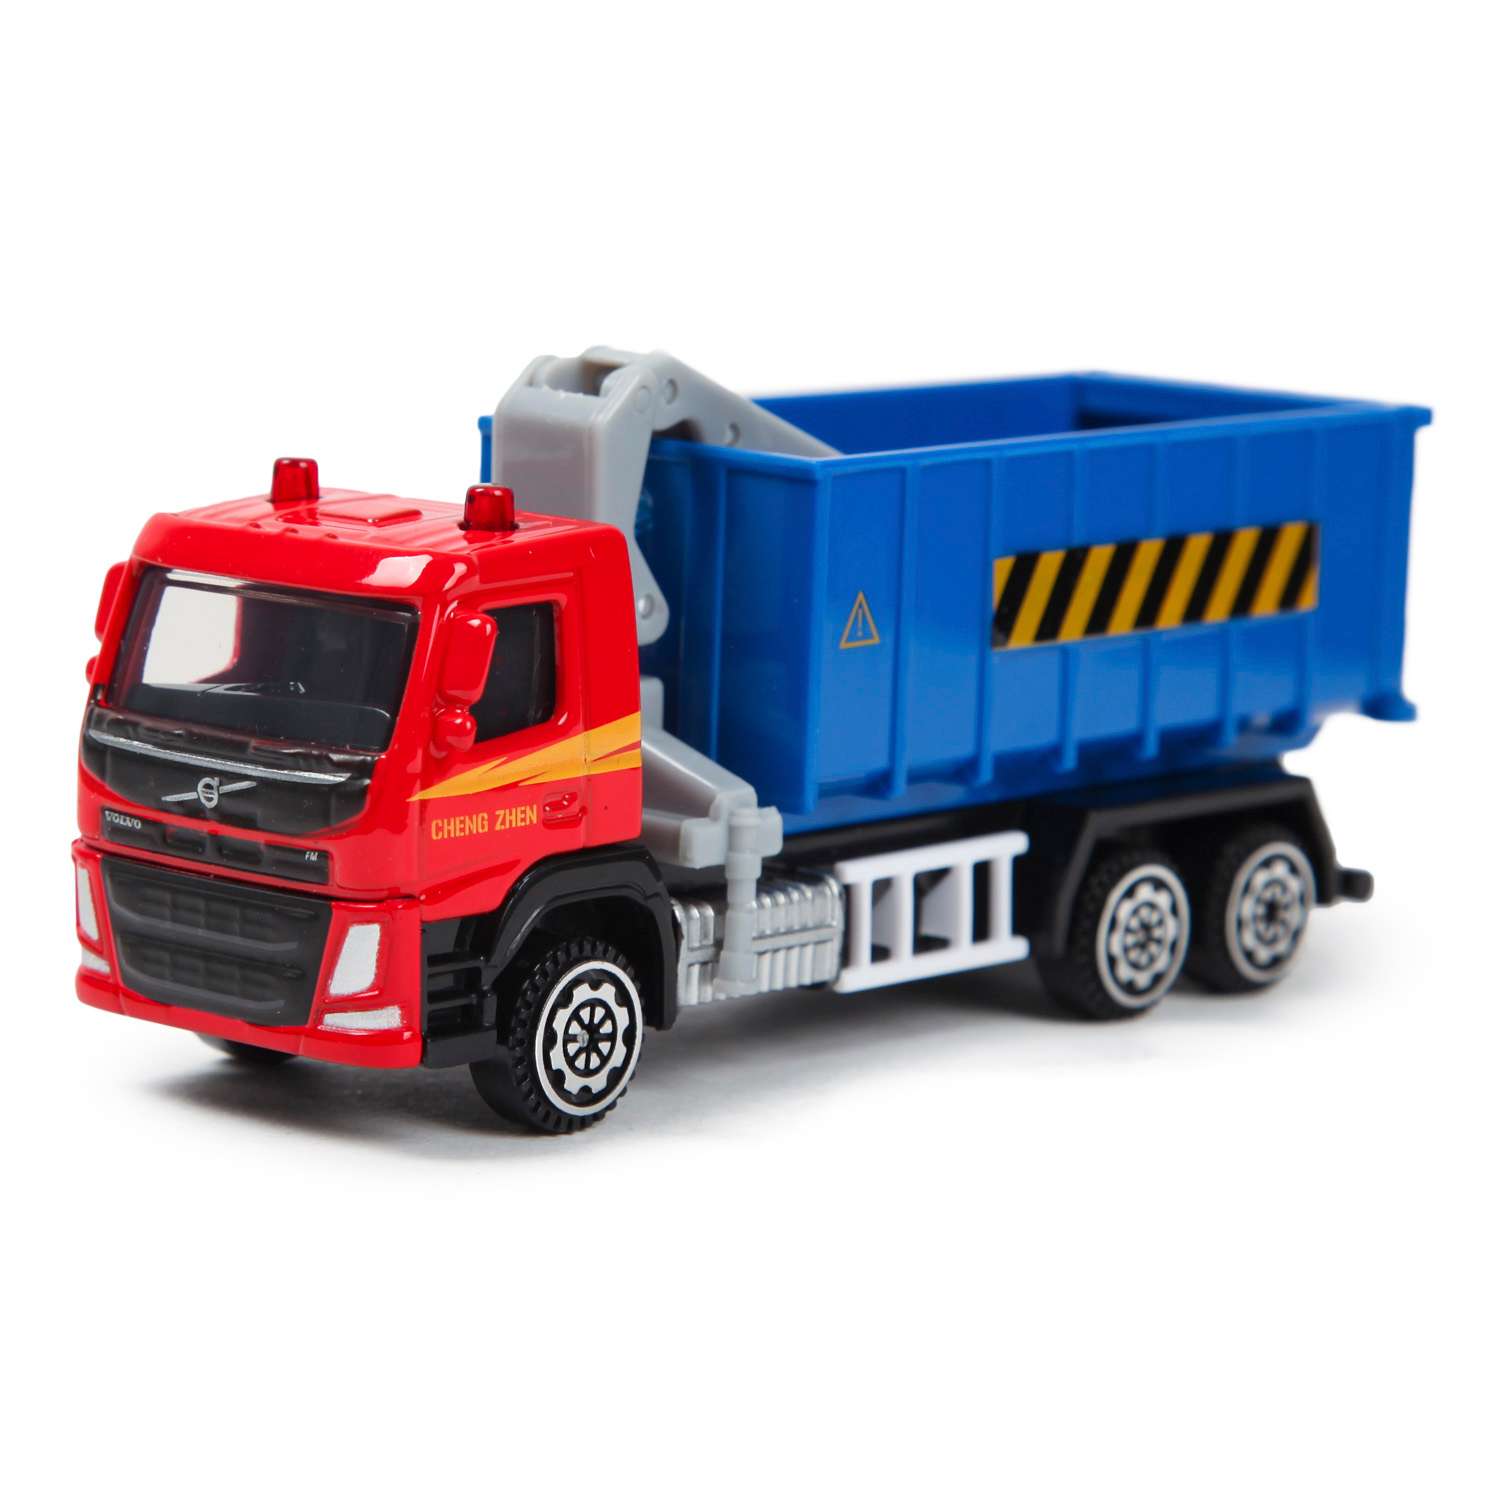 Красный грузовик турецкий. Красный грузовик игрушка. Грузовик с подарками. Красно синий грузовик. Вэнстэнстар 400 грузовик красно синий.